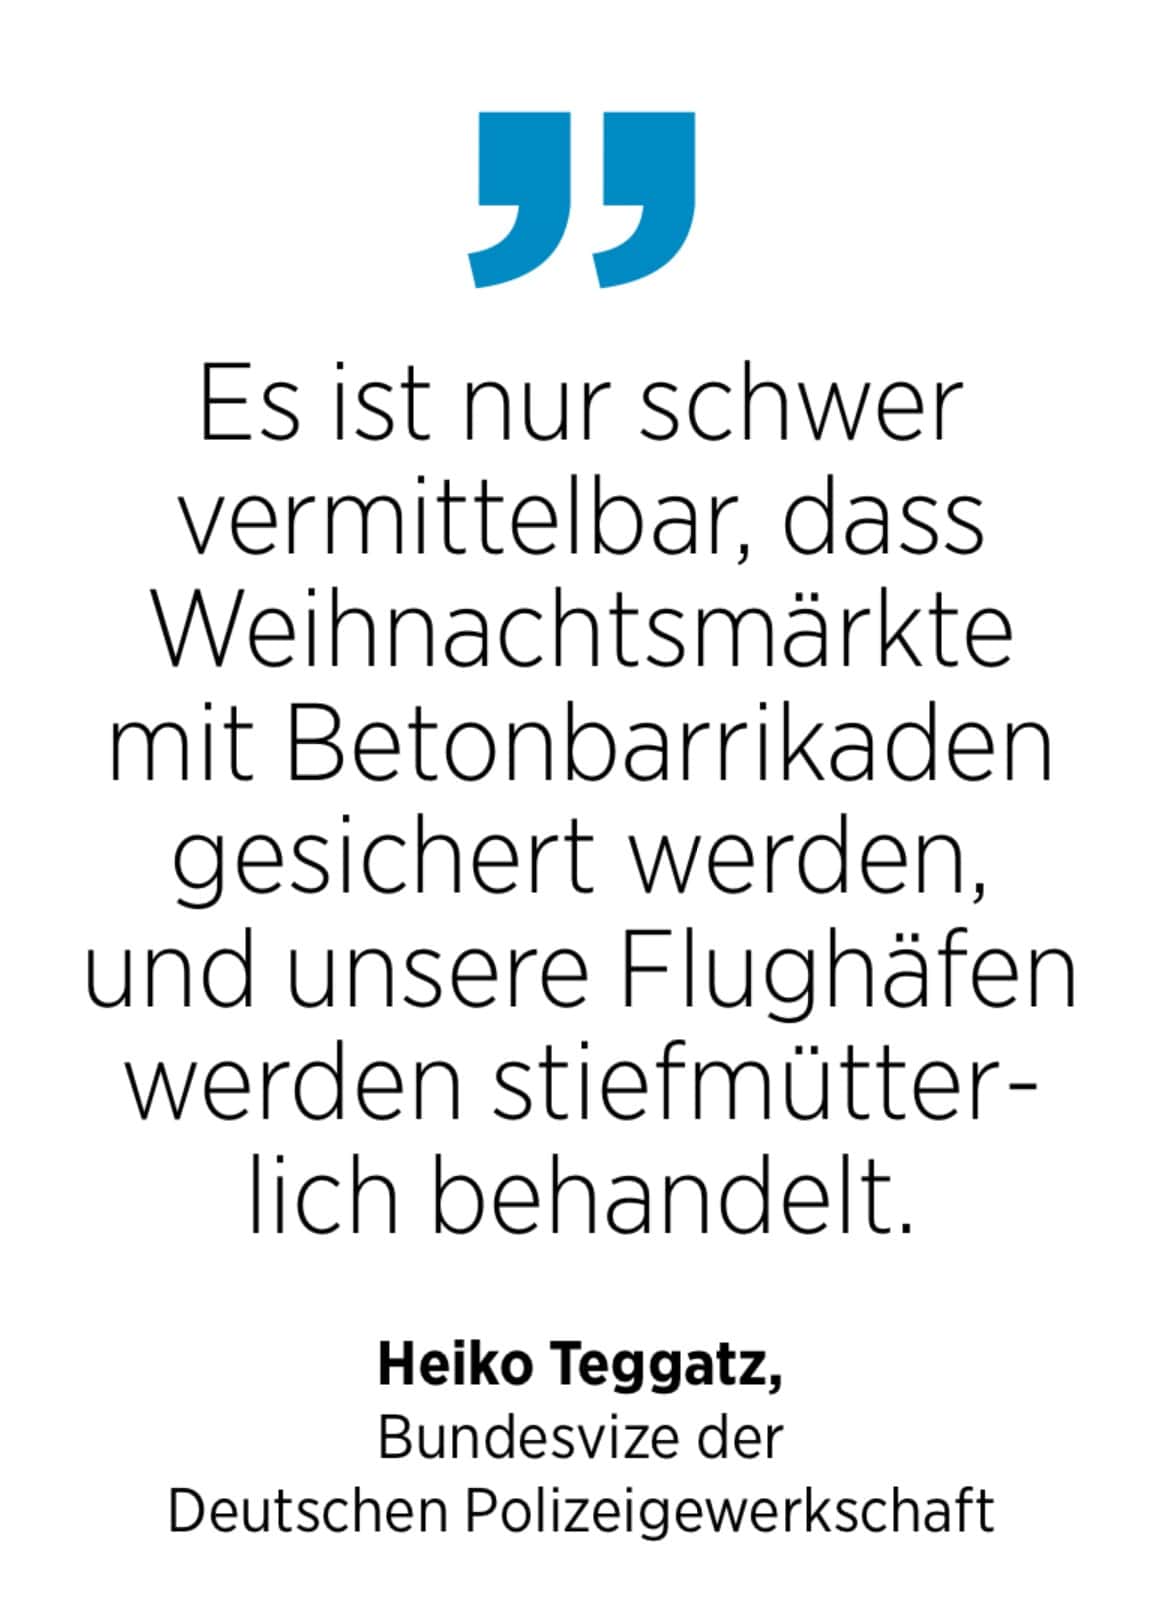 Heiko Teggatz, Bundesvize der Deutschen Polizeigewerkschaft: Es ist nur schwer vermittelbar, dass Weihnachtsmärkte mit Betonbarrikaden gesichert werden, und unsere Flughäfen werden stiefmütterlich behandelt.